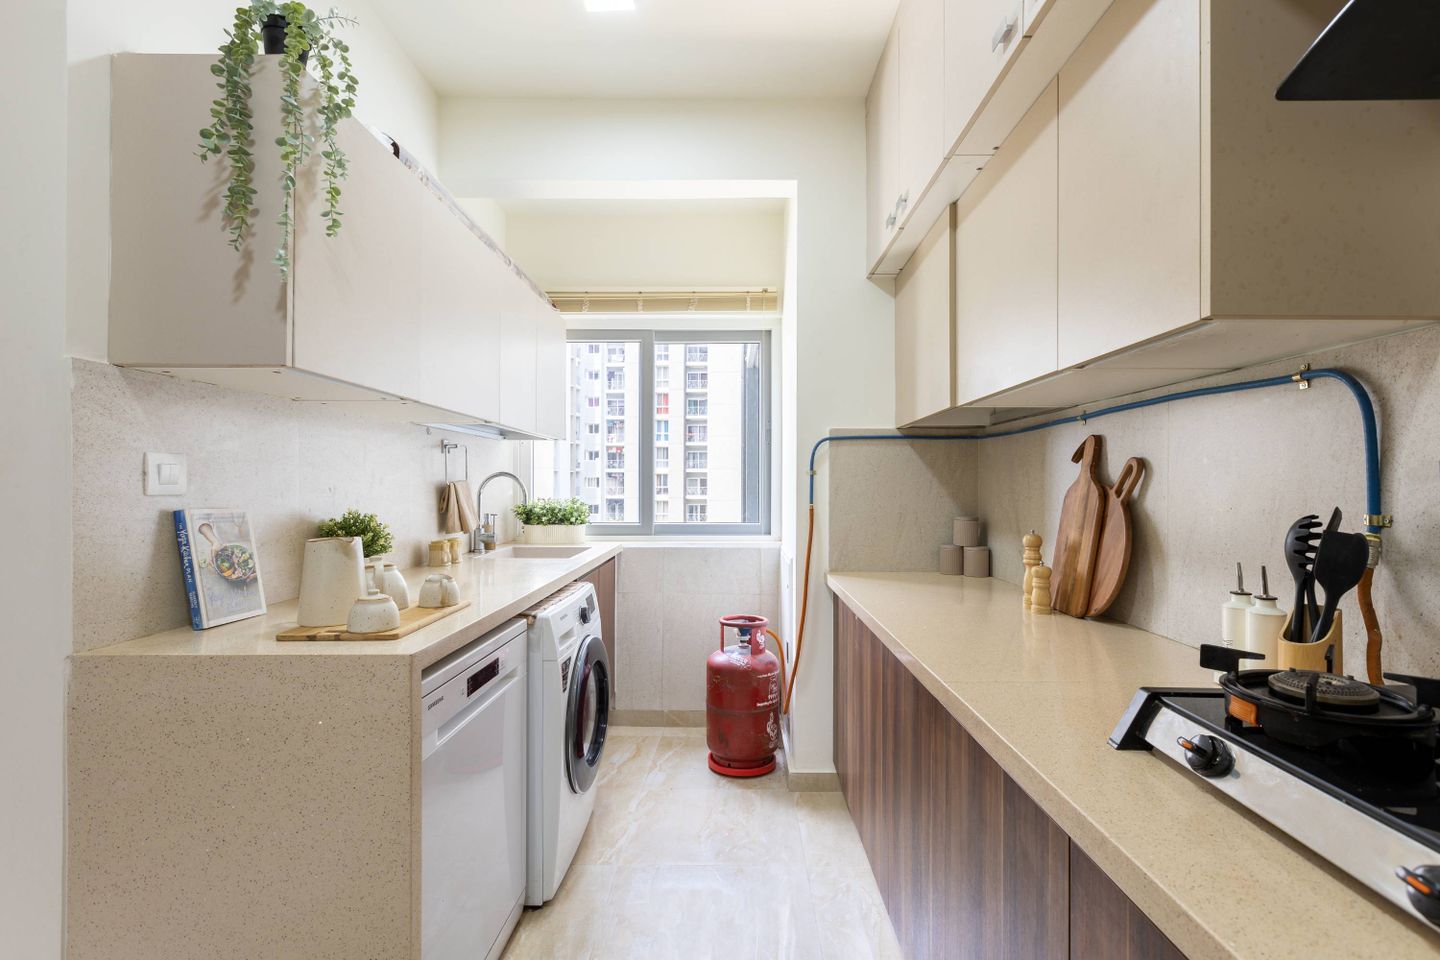 Modern Parallel Kitchen Design With Wooden Storage Cabinets